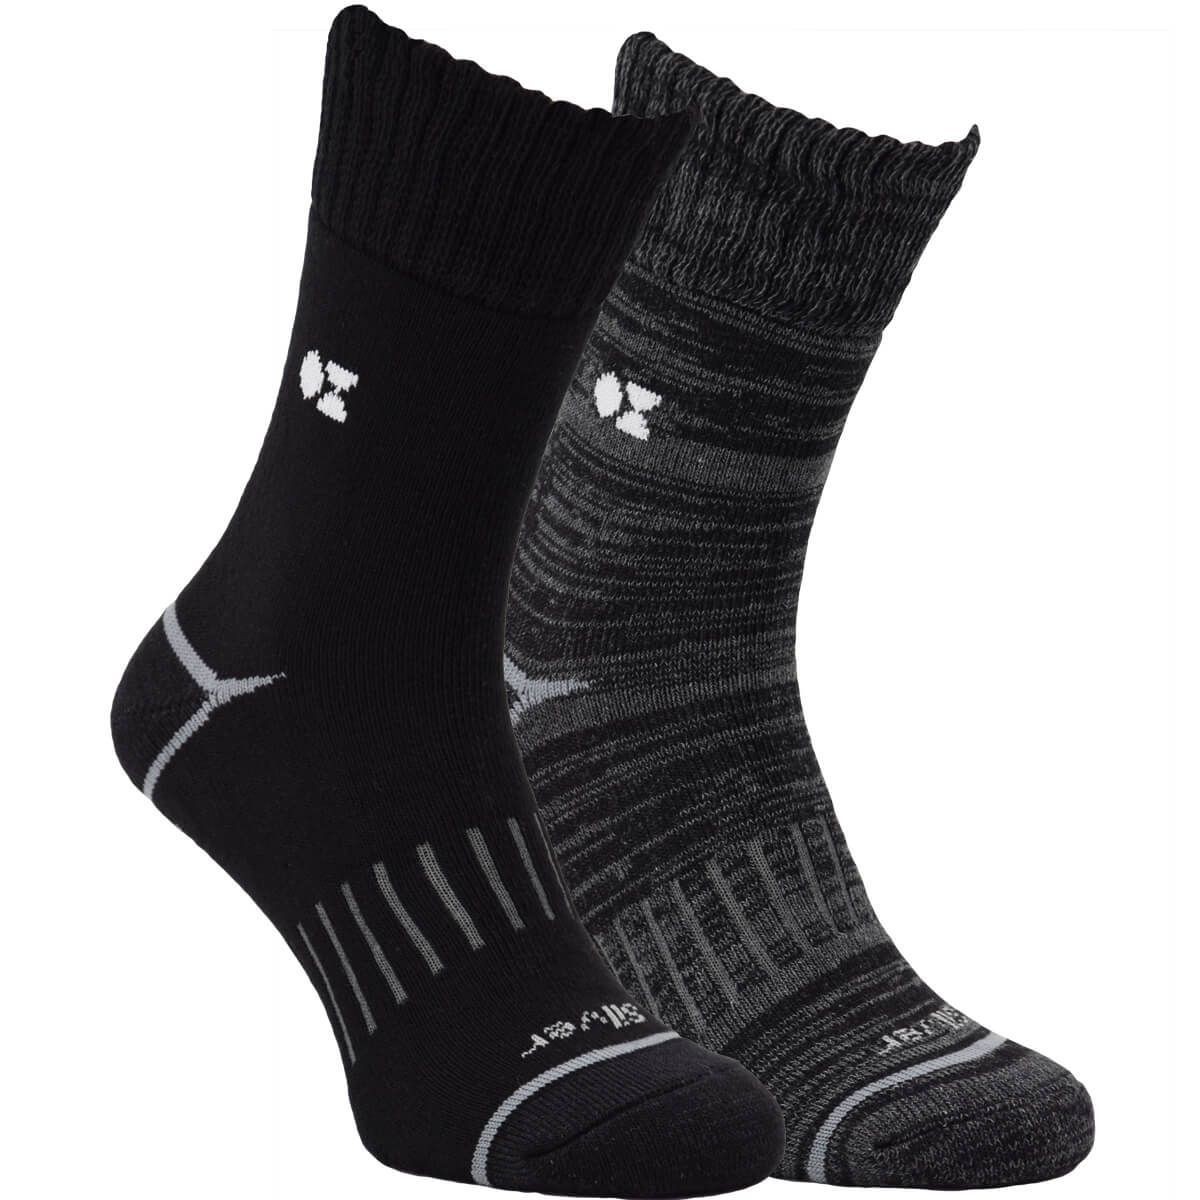 Active pánské jednobarevné bavlněné froté ponožky se stříbrem OXSOX